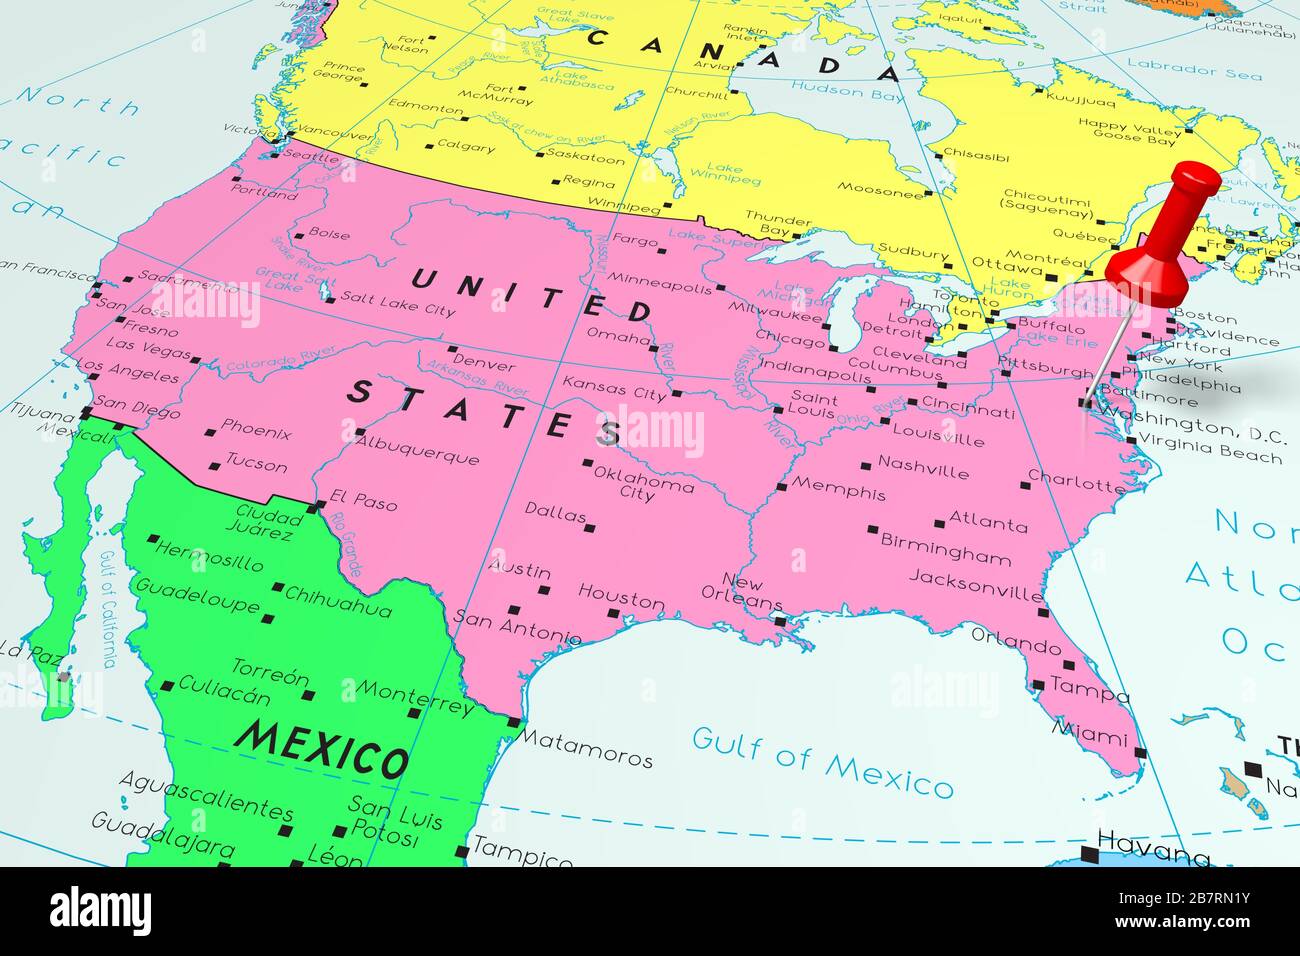 washington dc on map of america United States Of America Usa Washington D C Capital City washington dc on map of america